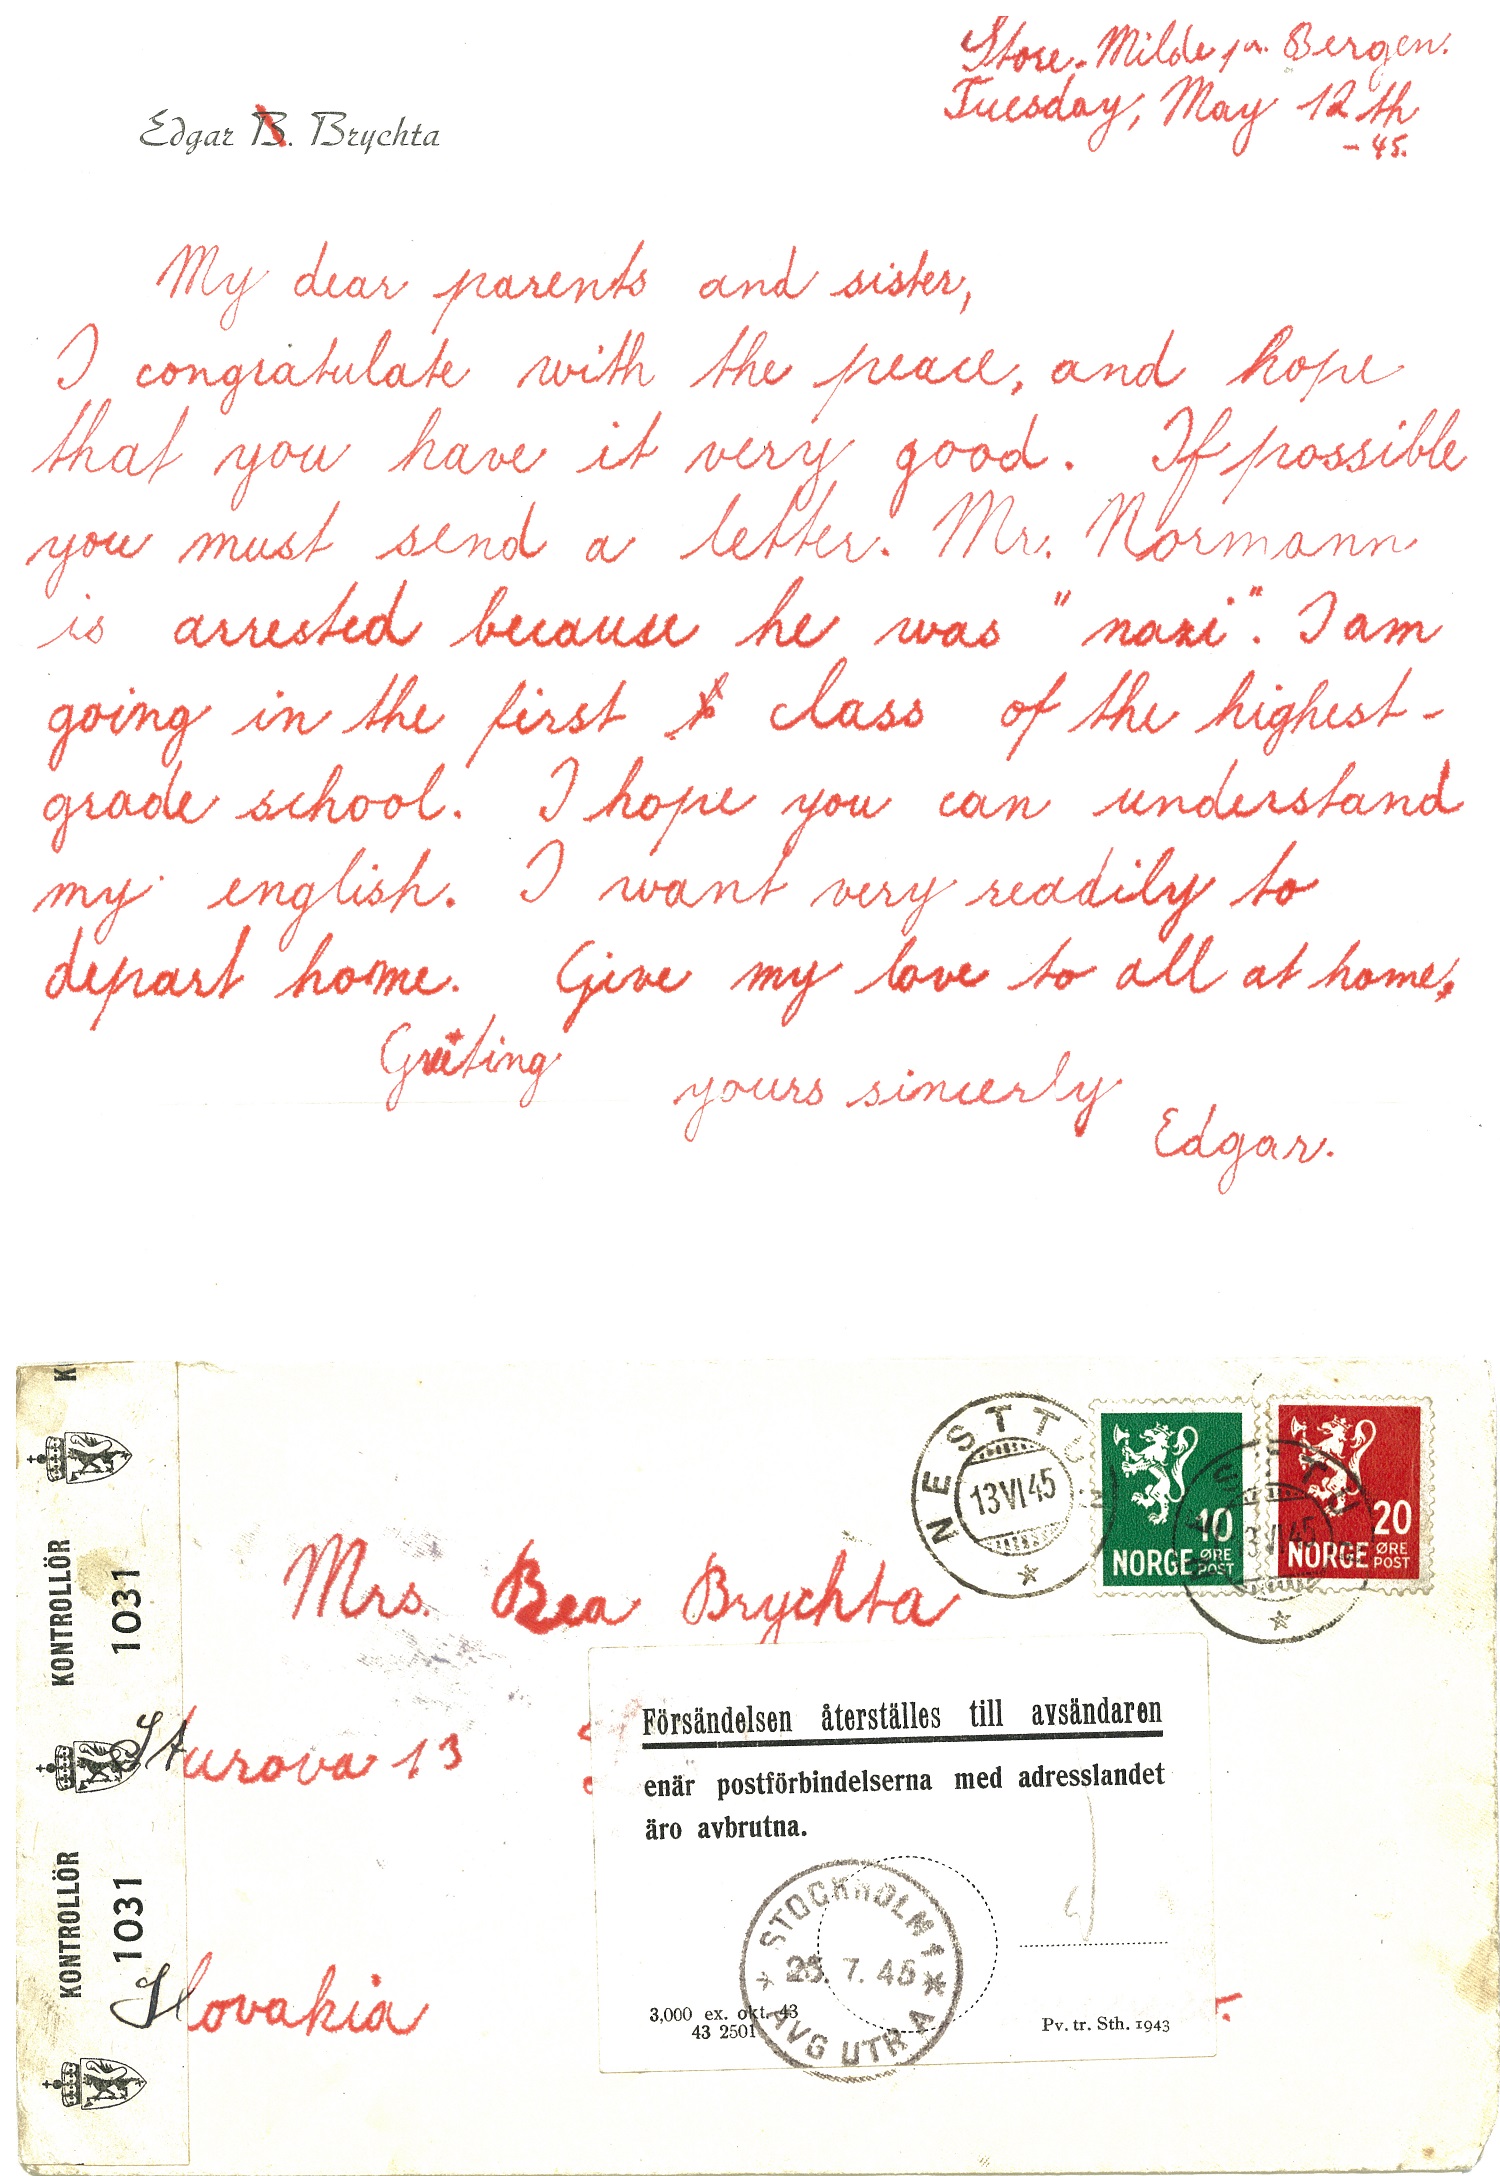 Brev: «My dear parents and sister». Brev fra Edgar Brichta til sine foreldre på engelsk, datert 12. mai 1945. Fra arkivet etter Edgar Brichta, HL-senteret